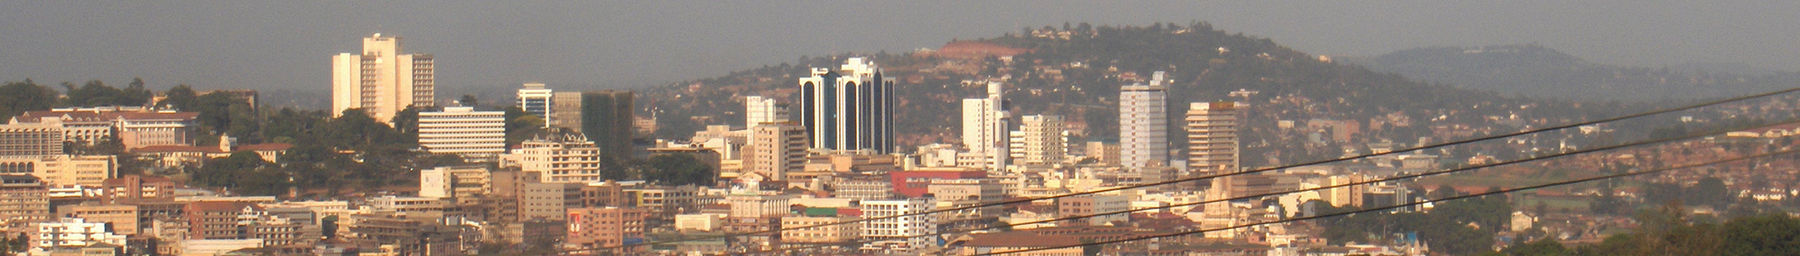 Kampala banner.jpg